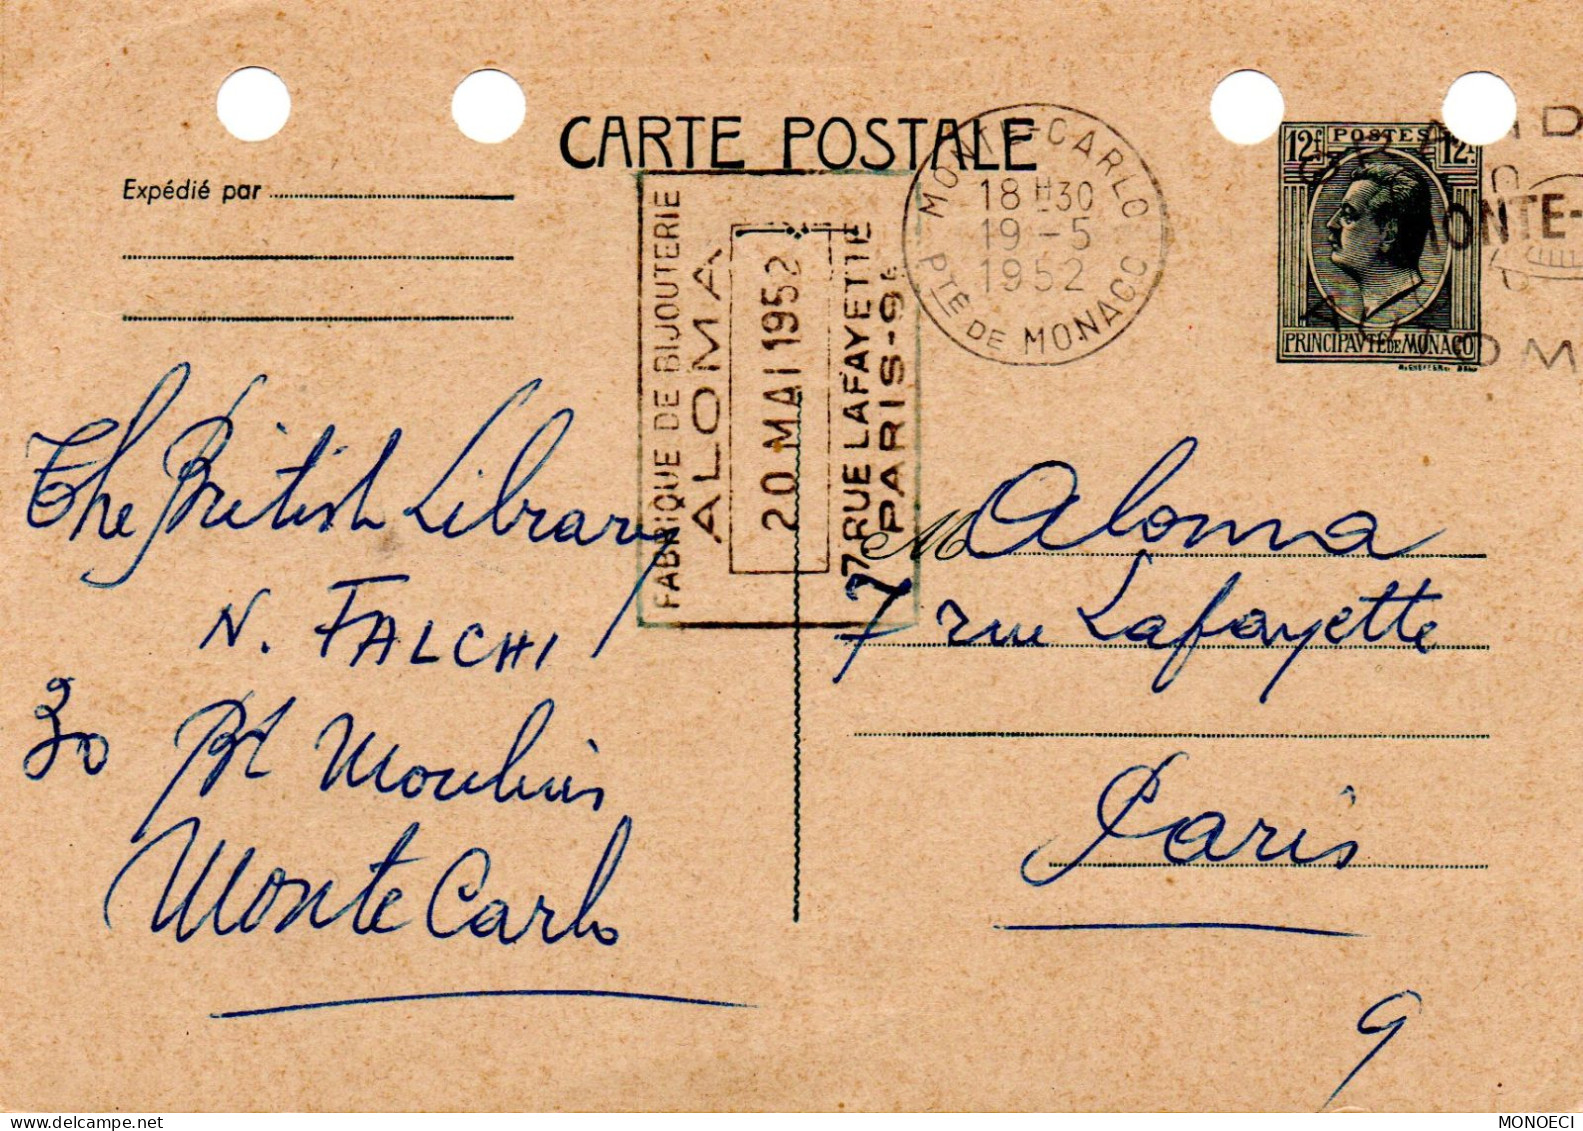 MONACO -- MONTE CARLO -- Entier Postal -- Carte Postale -- Prince Louis II -- 12 Francs Gris Vert Sur Chamois  (1949) - Ganzsachen